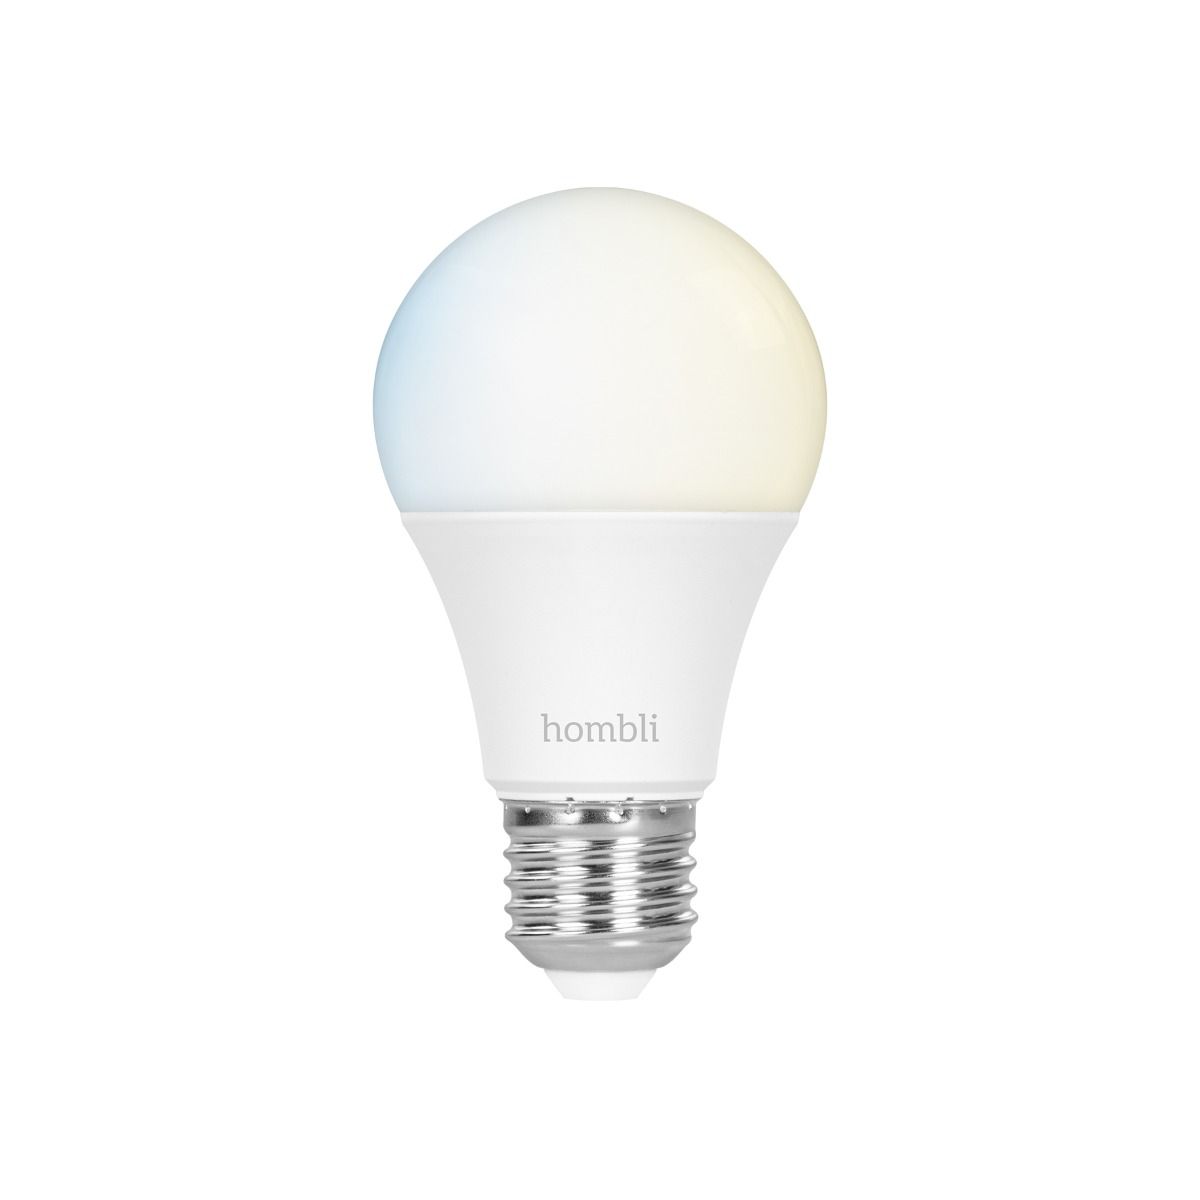 Hombli -  E27 Smart Bulb -  Tunable White